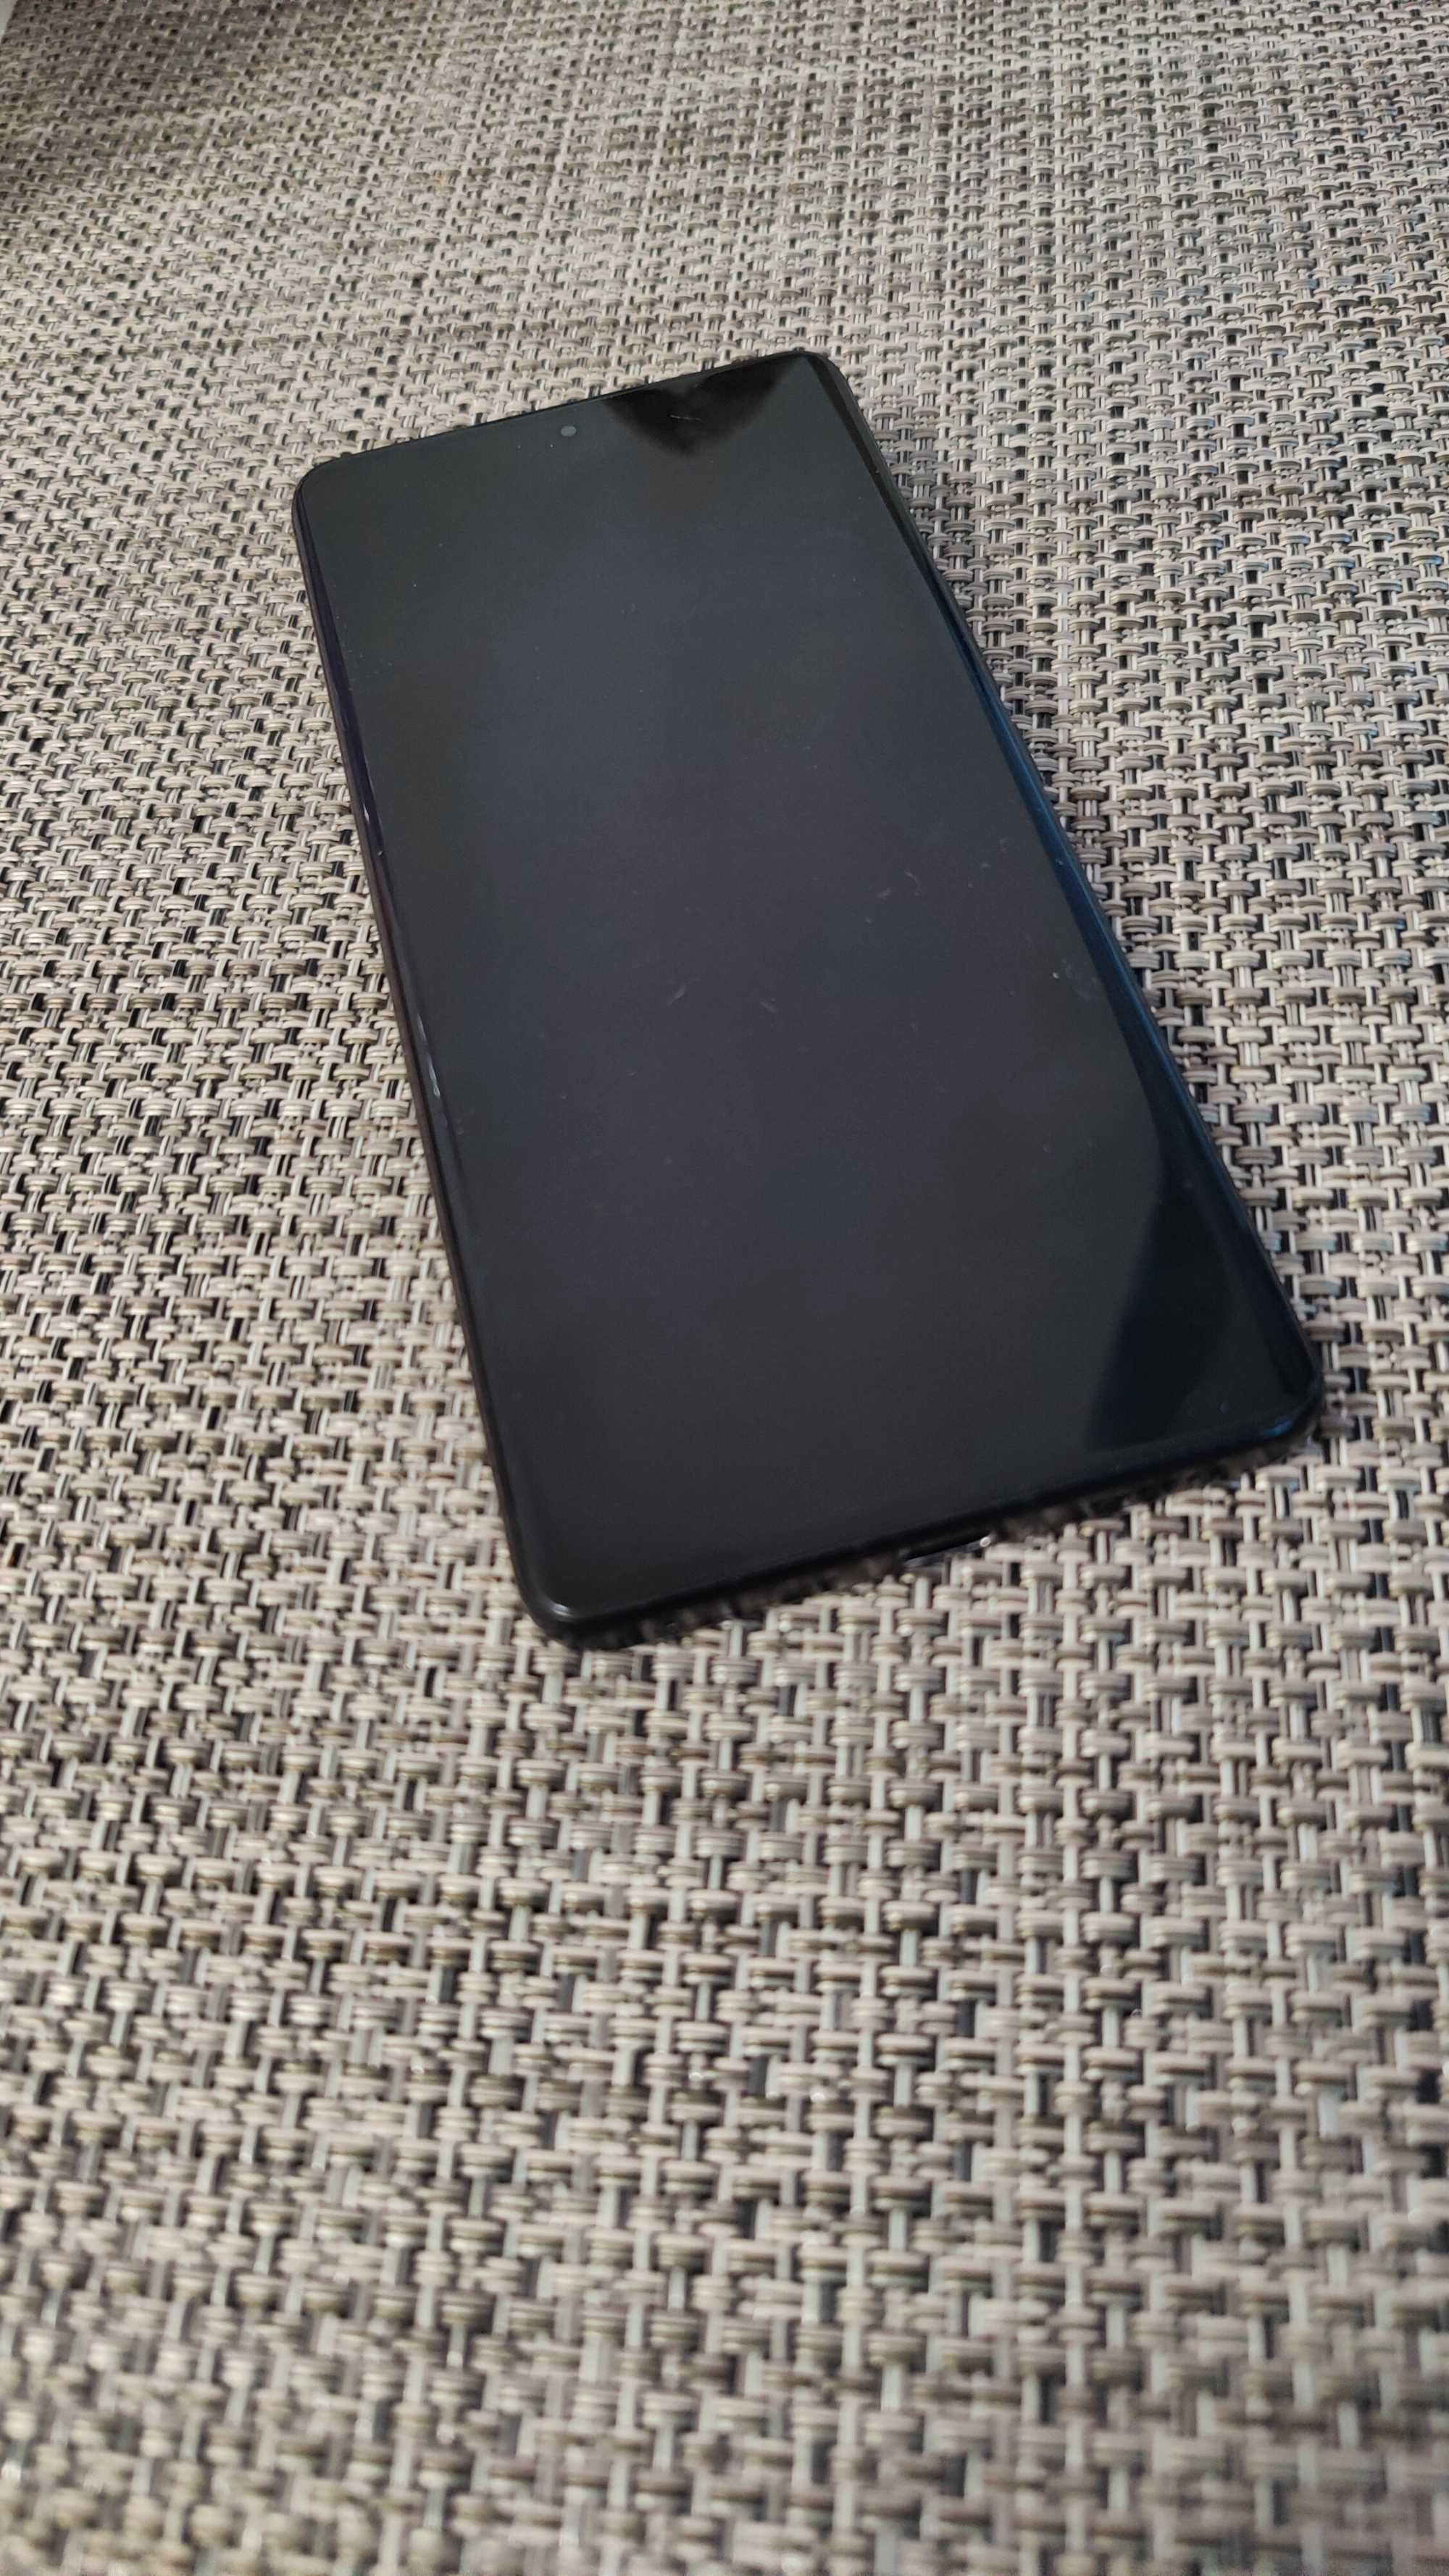 Xiaomi 12S Ultra